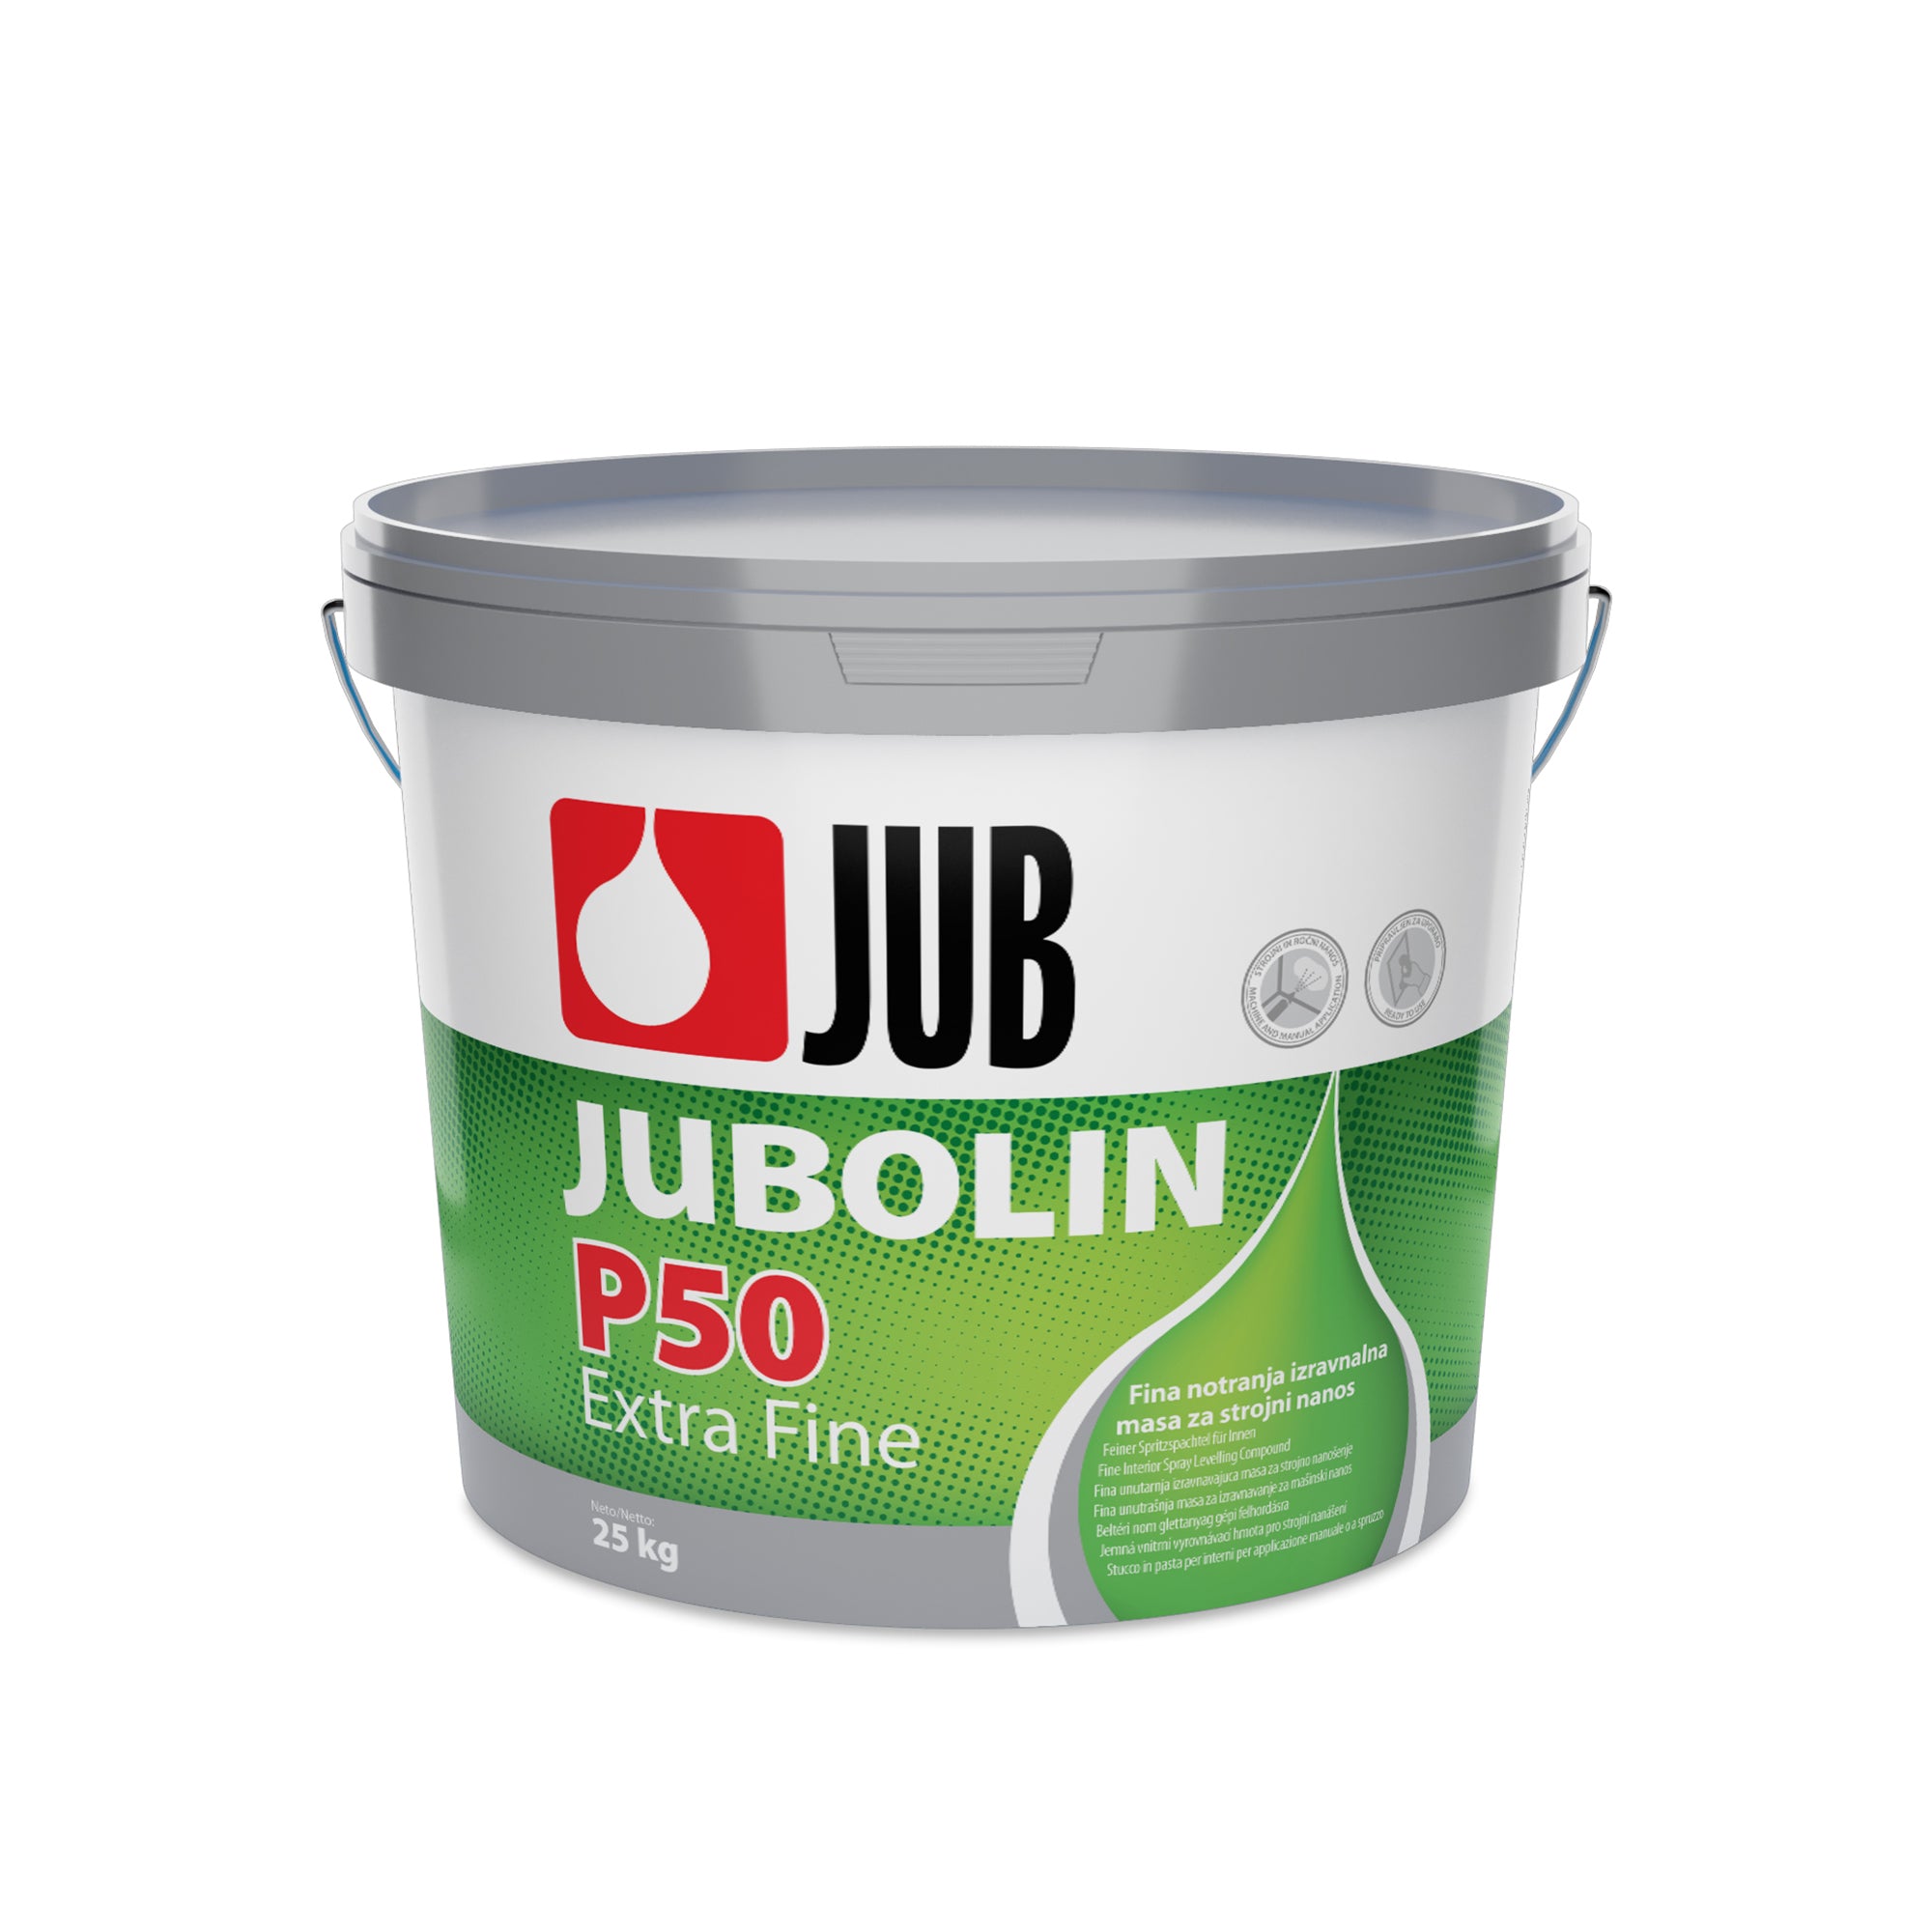 JUB JUBOLIN P50 Extra Fine disperzní extra jemný stěrkový tmel 25 kg